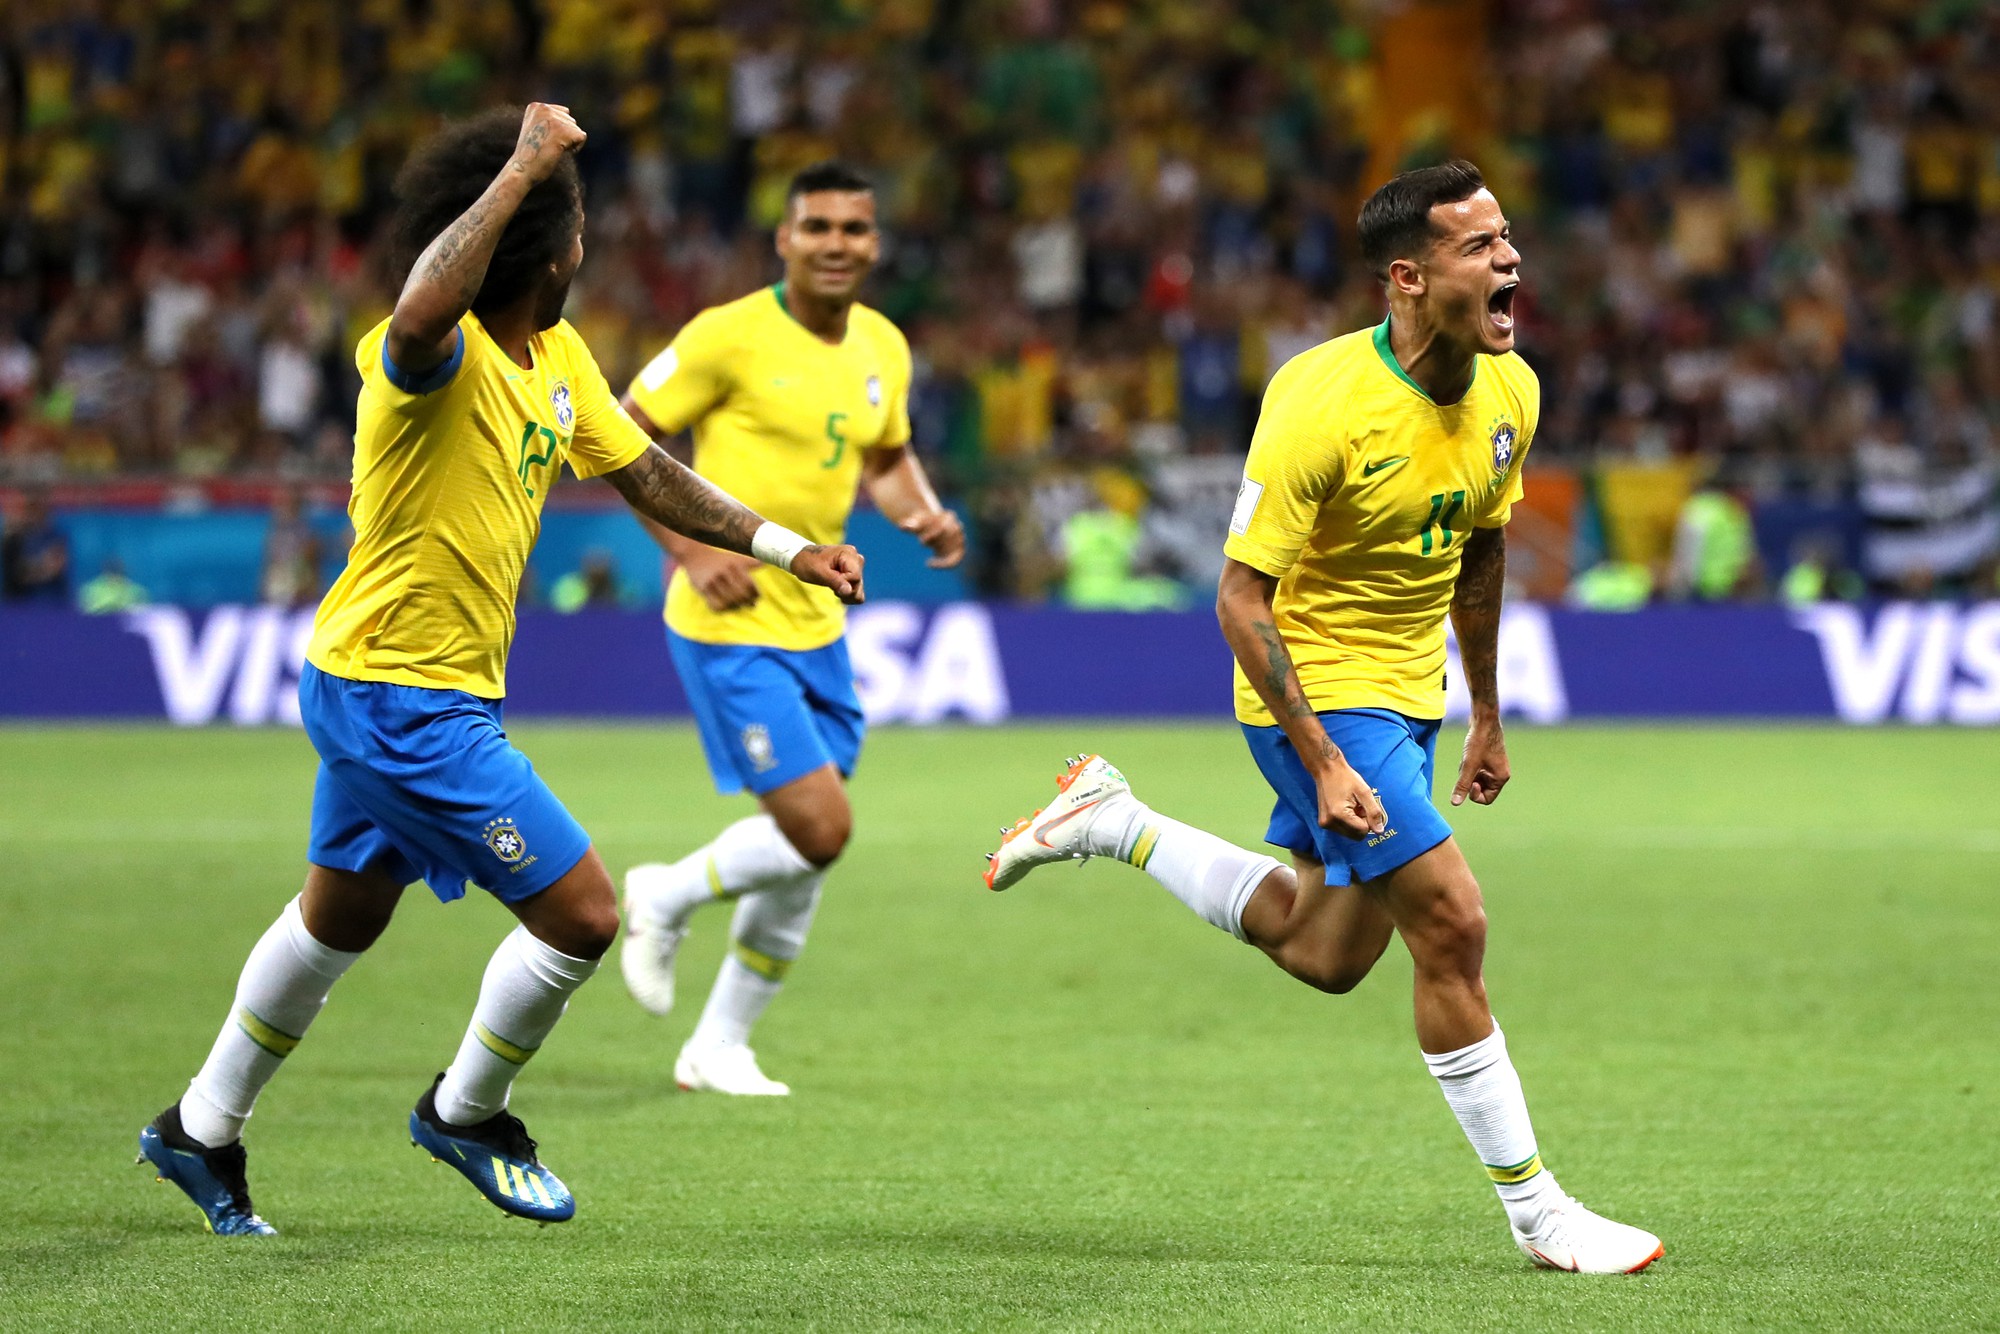 HLV Brazil nói gì sau trận hòa thất vọng trước Thụy Sĩ? - Ảnh 1.